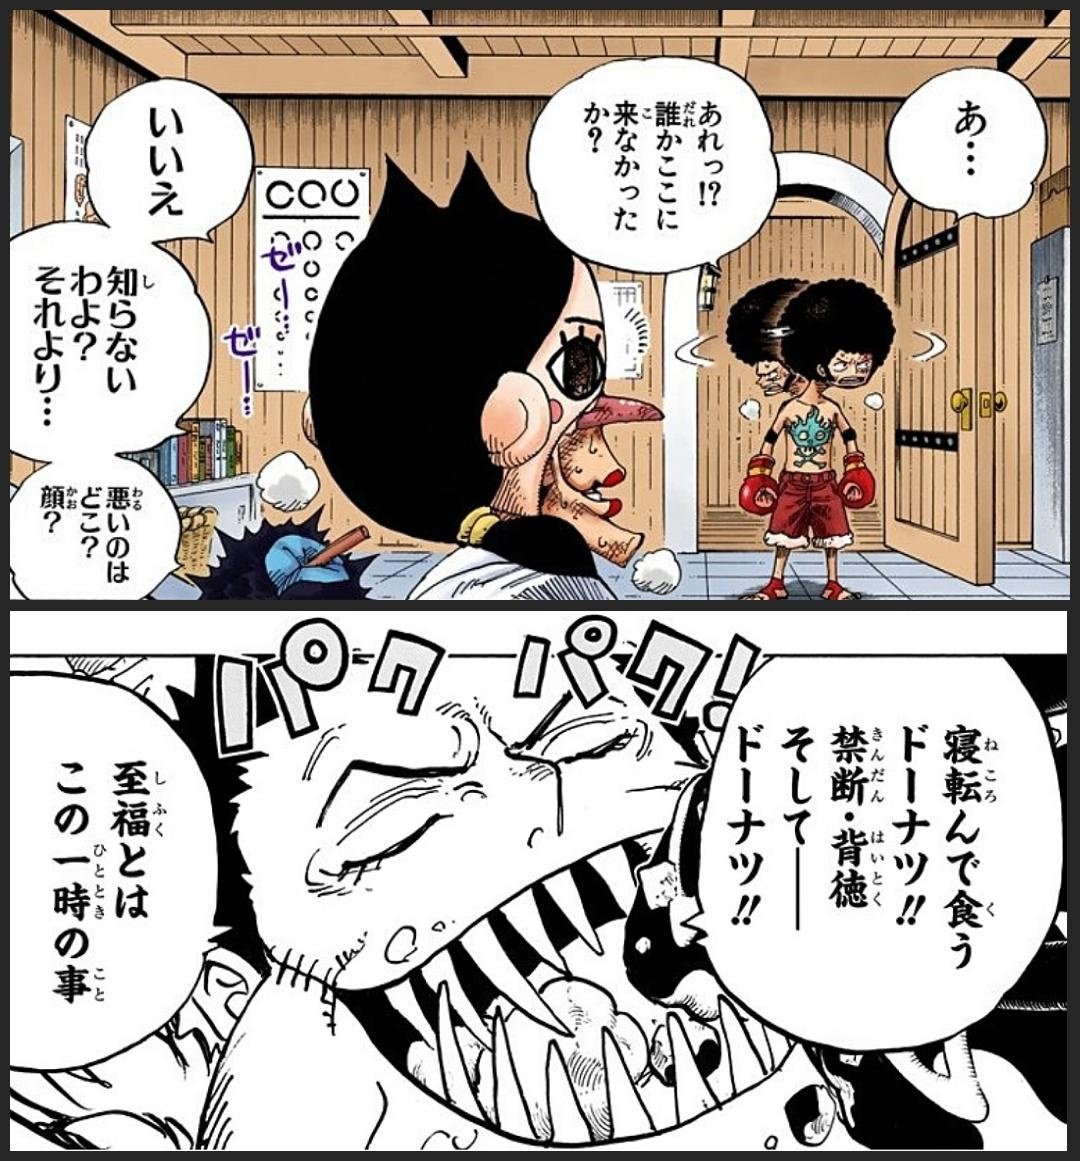 まな One Piece に登場するキャラクターについて 尾田先生 完璧な人間はつまらない 人は人の 欠点 を愛するのです Onepiece